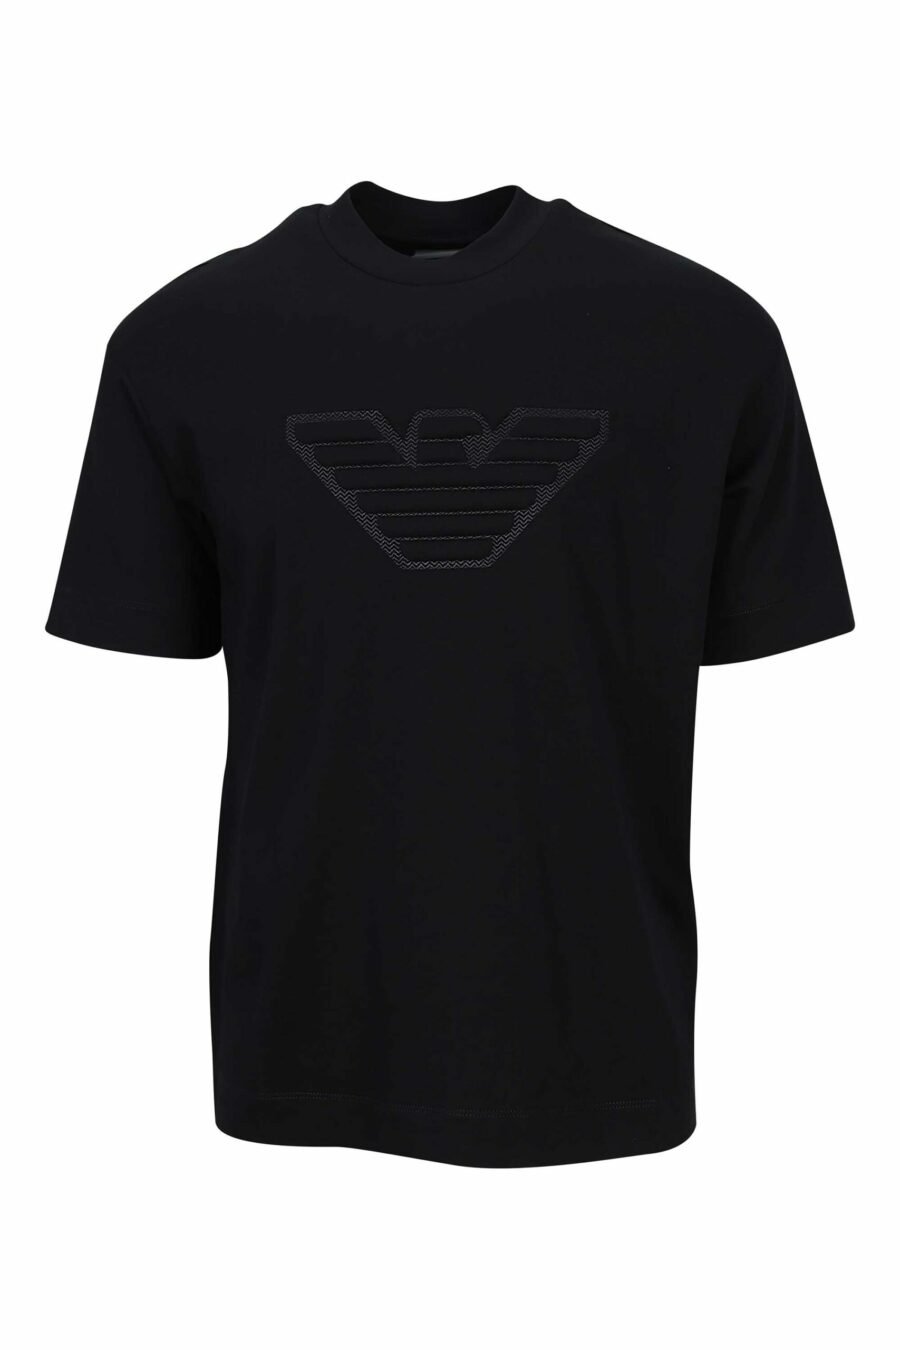 T-shirt preta com maxilogo de águia monocromático - 8057970432920 à escala